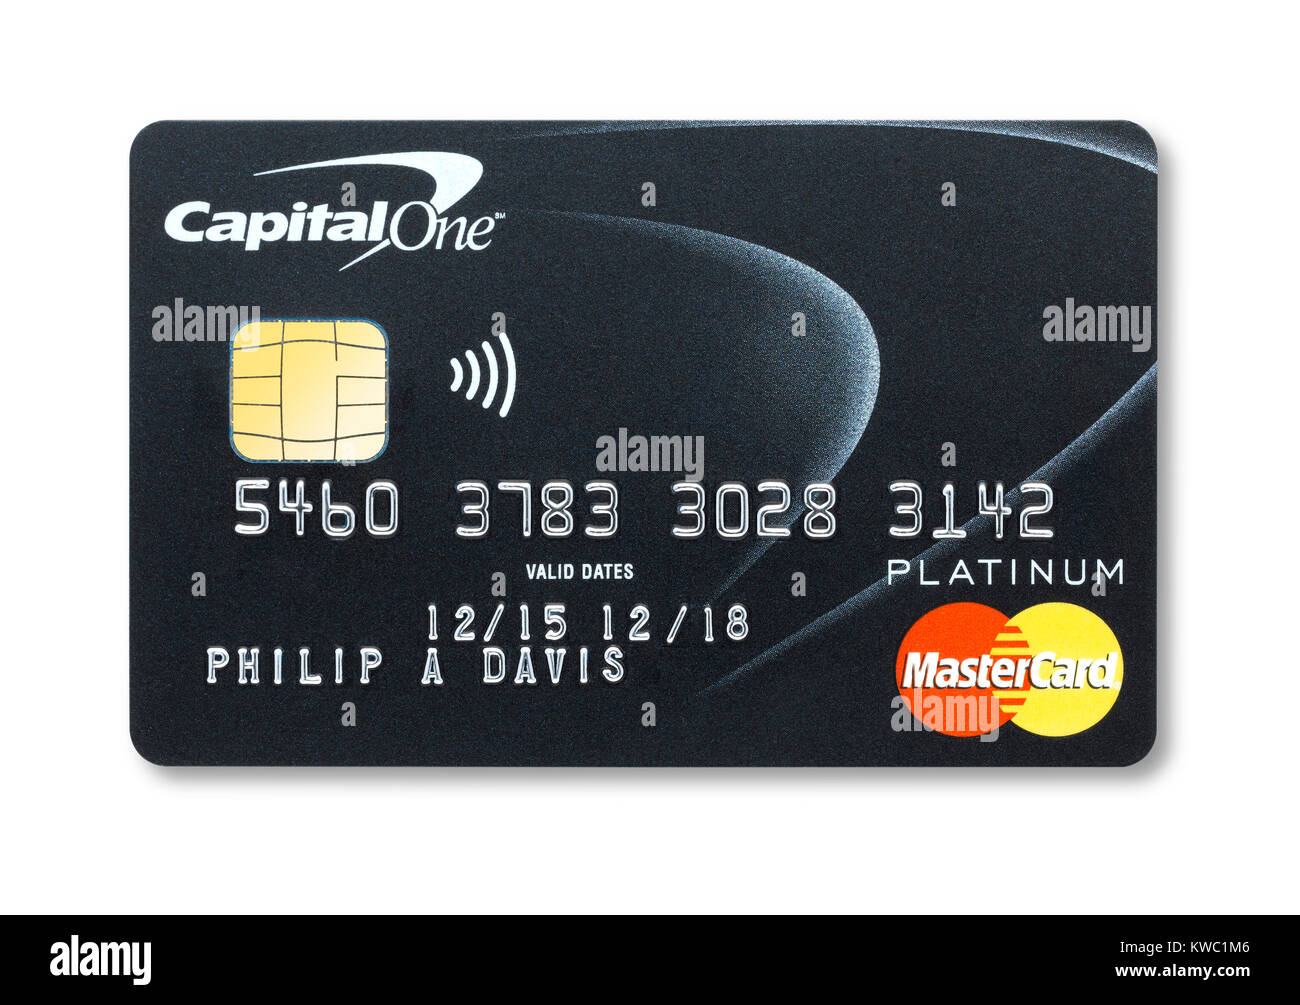 Coupe simple d'une carte de crédit Capital One holding avec ombre Banque D'Images